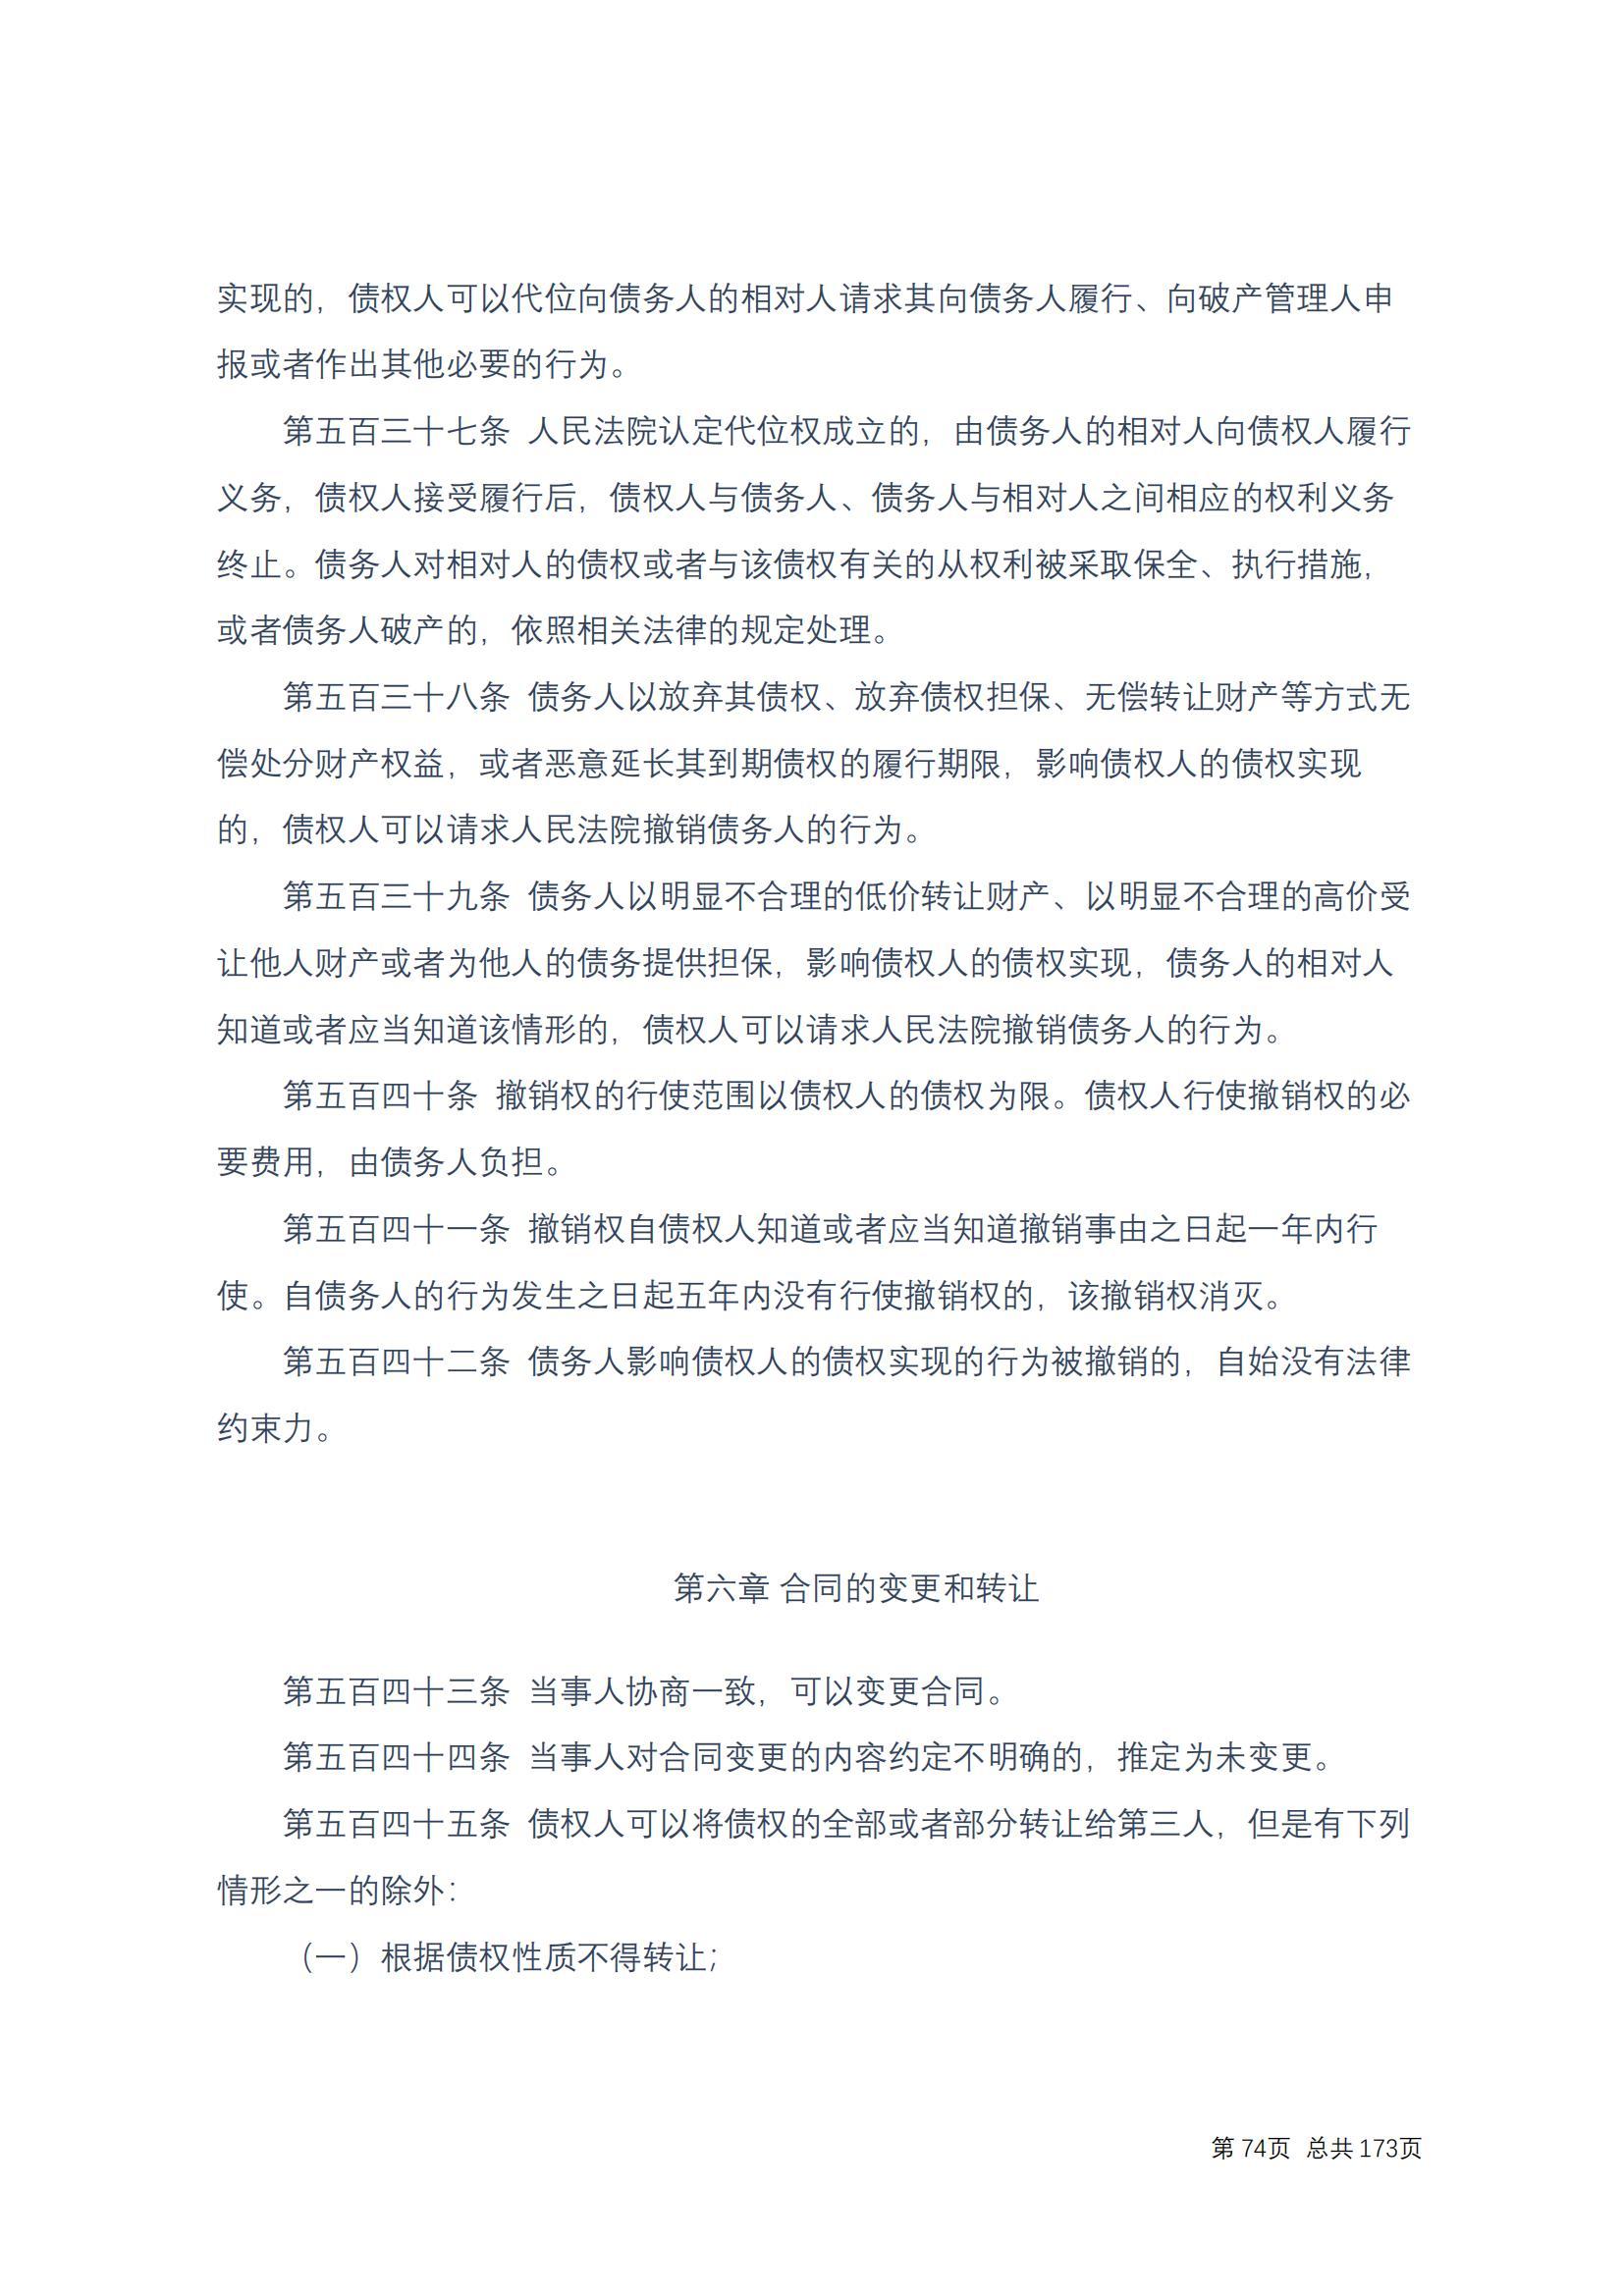 中华人民共和国民法典 修改过_73